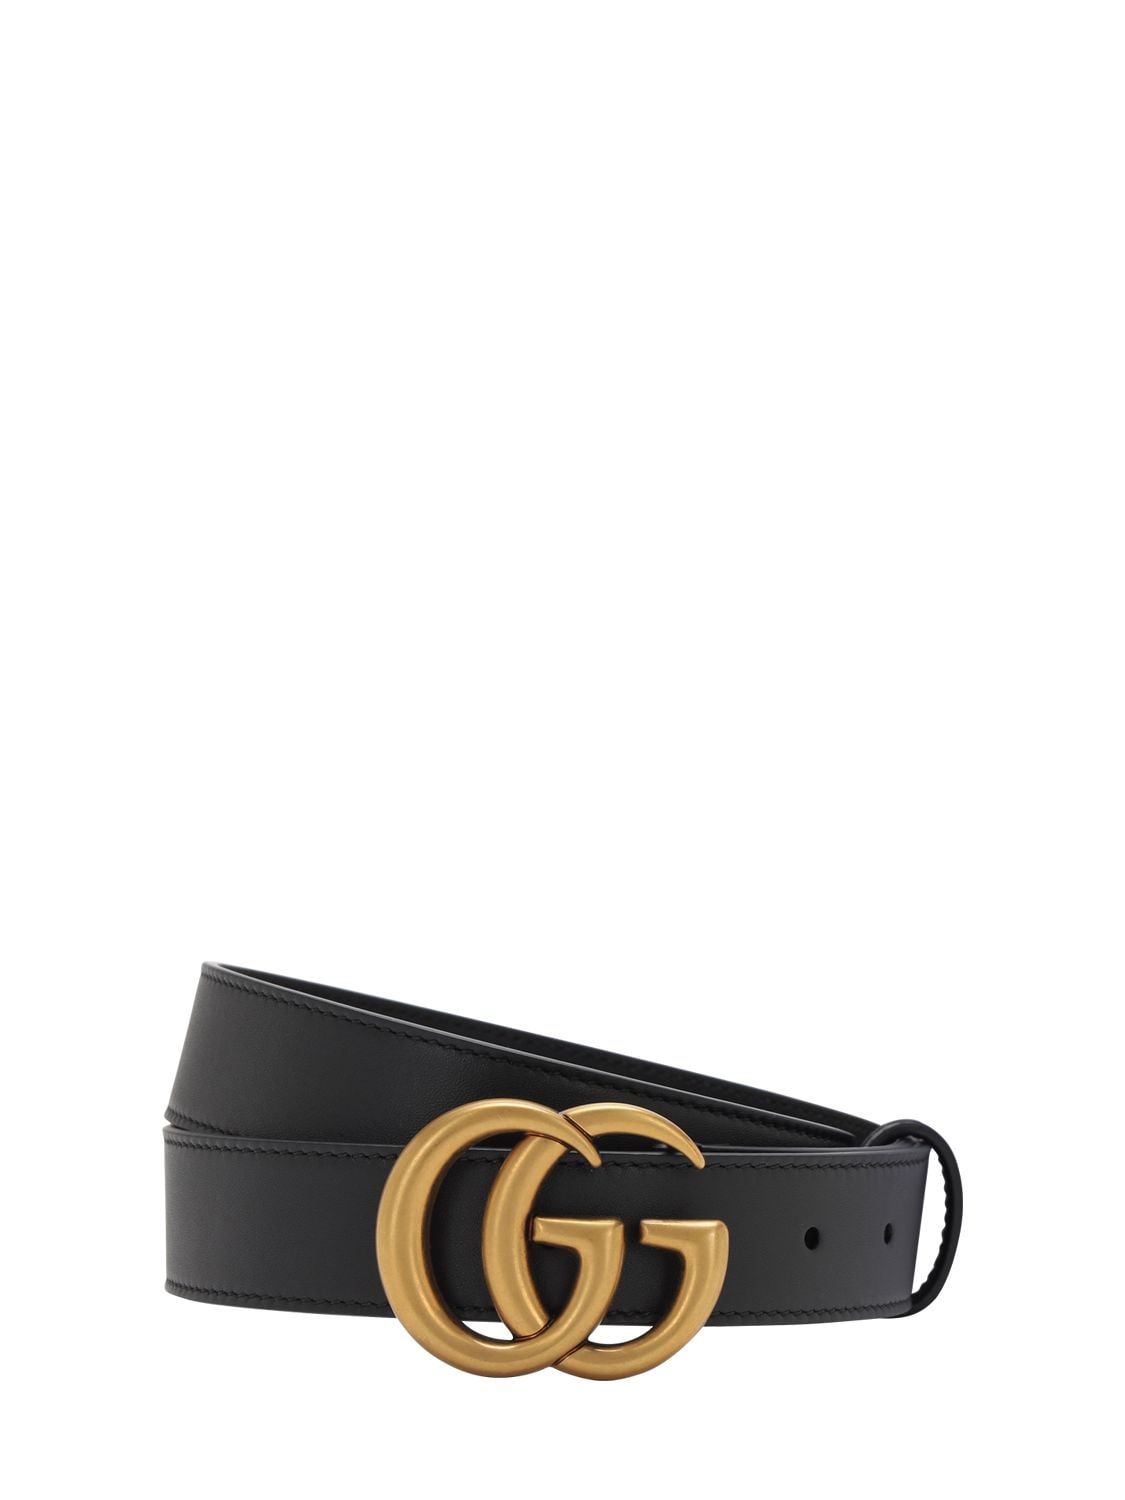 Smøre Næb Folkeskole Gucci - 3cm gg gold buckle leather belt - Black | Luisaviaroma